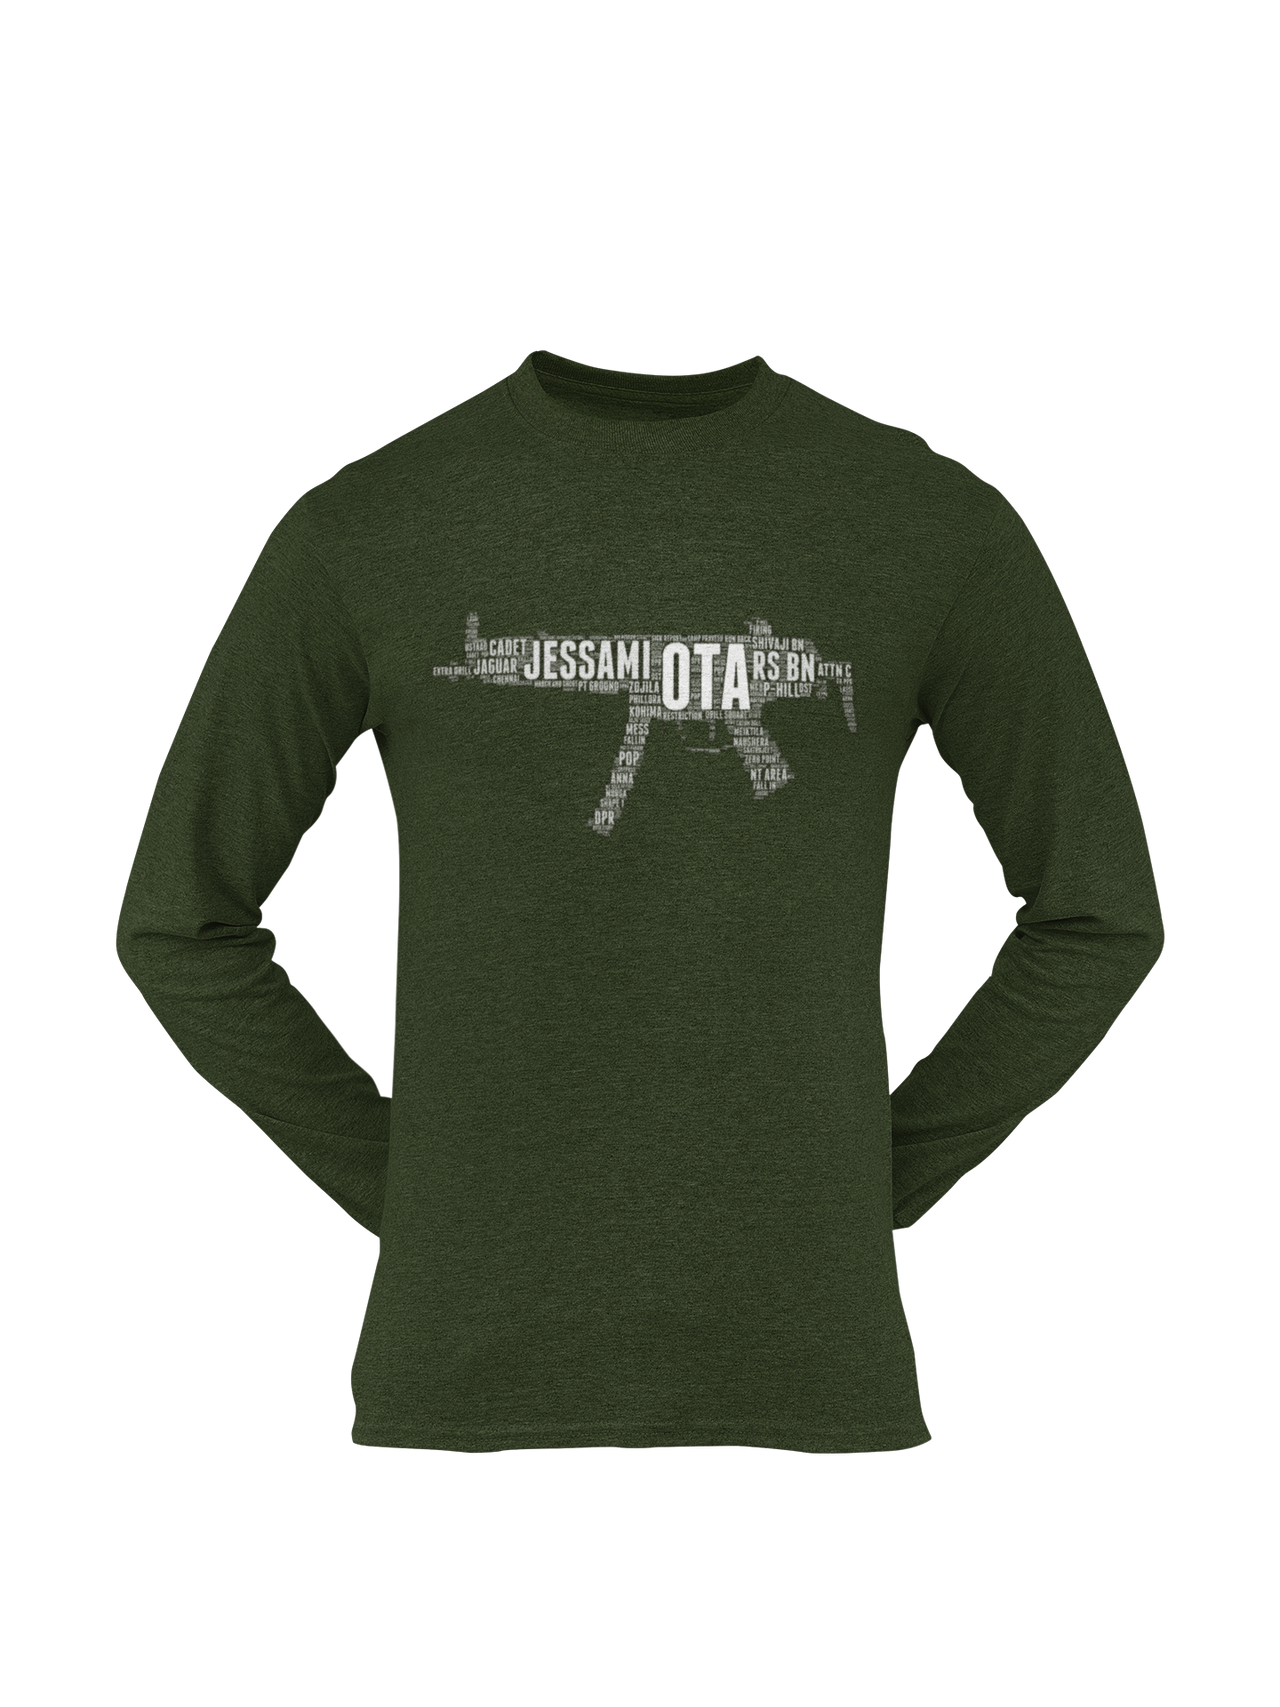 OTA T-shirt - Word Cloud Jessami - MP5 (Men)